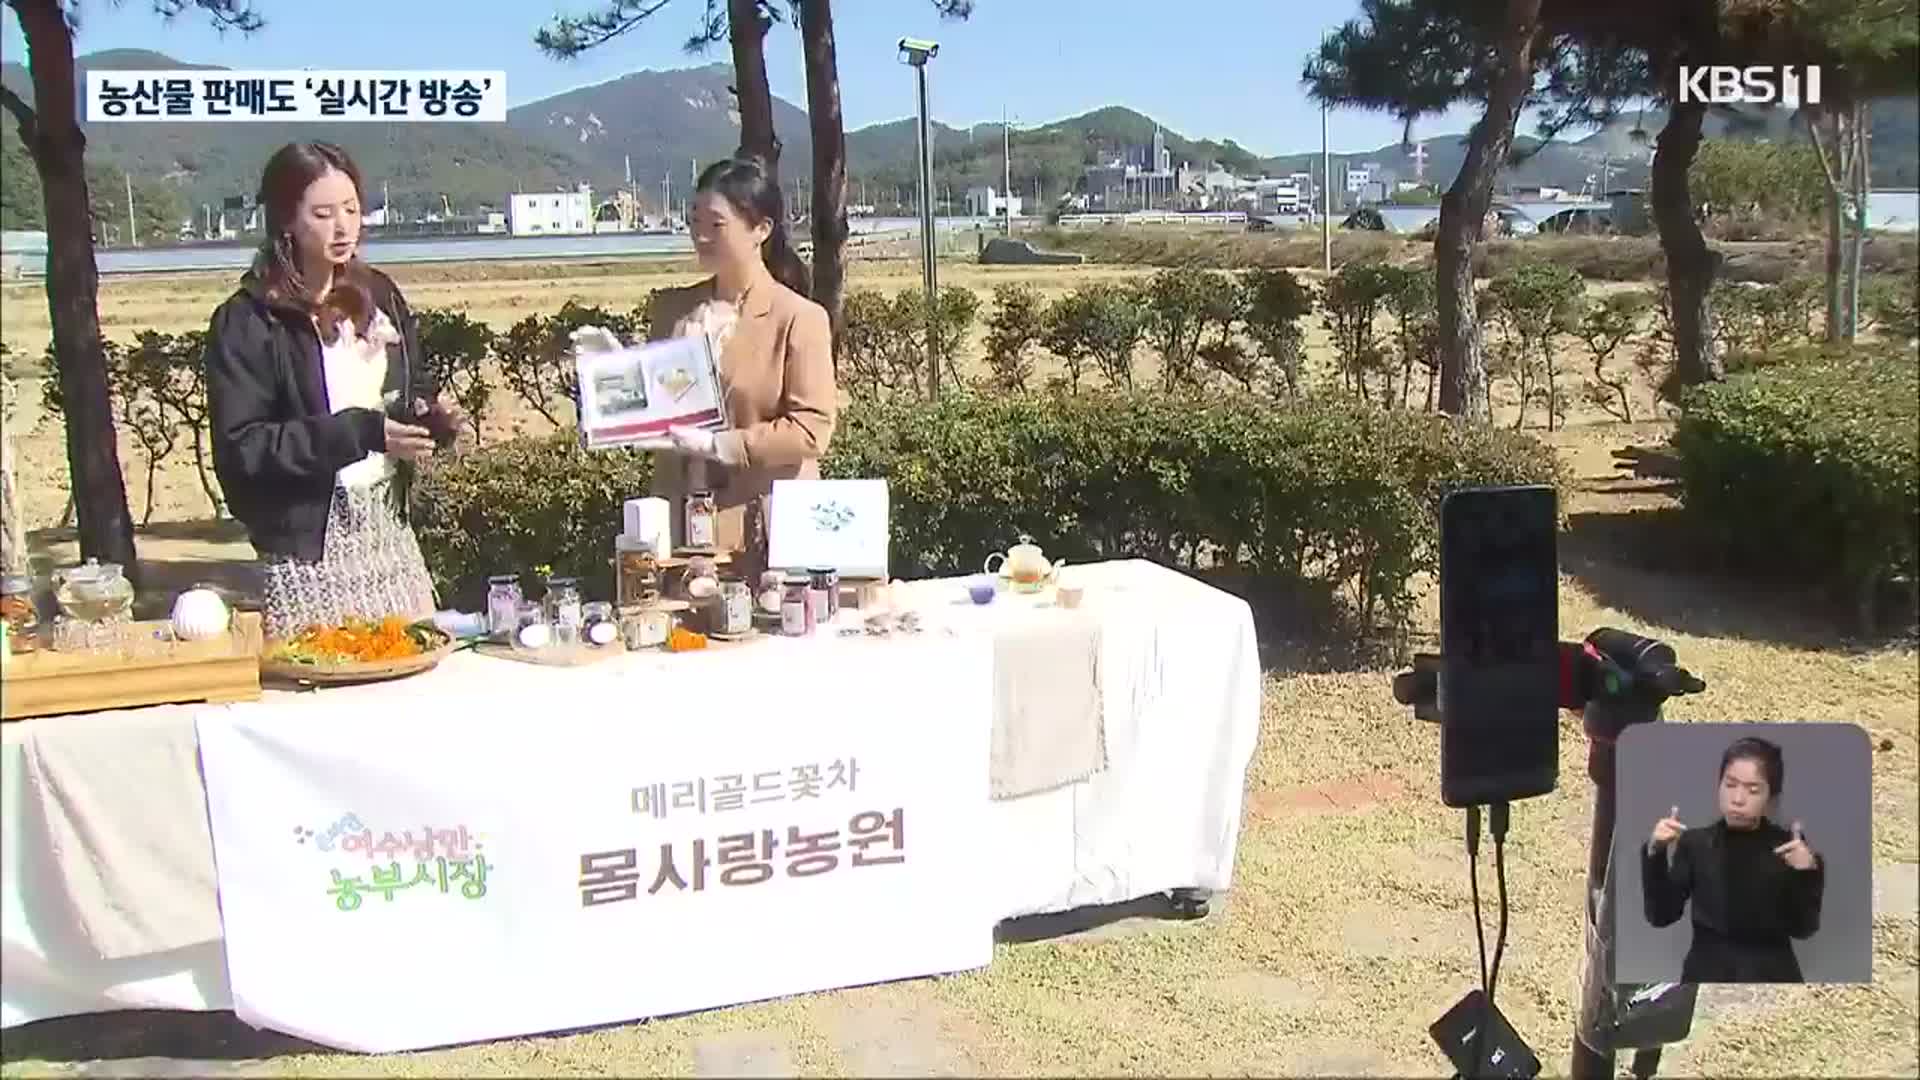 “우리 농산물 ‘라이브 커머스’로 팔아요!”